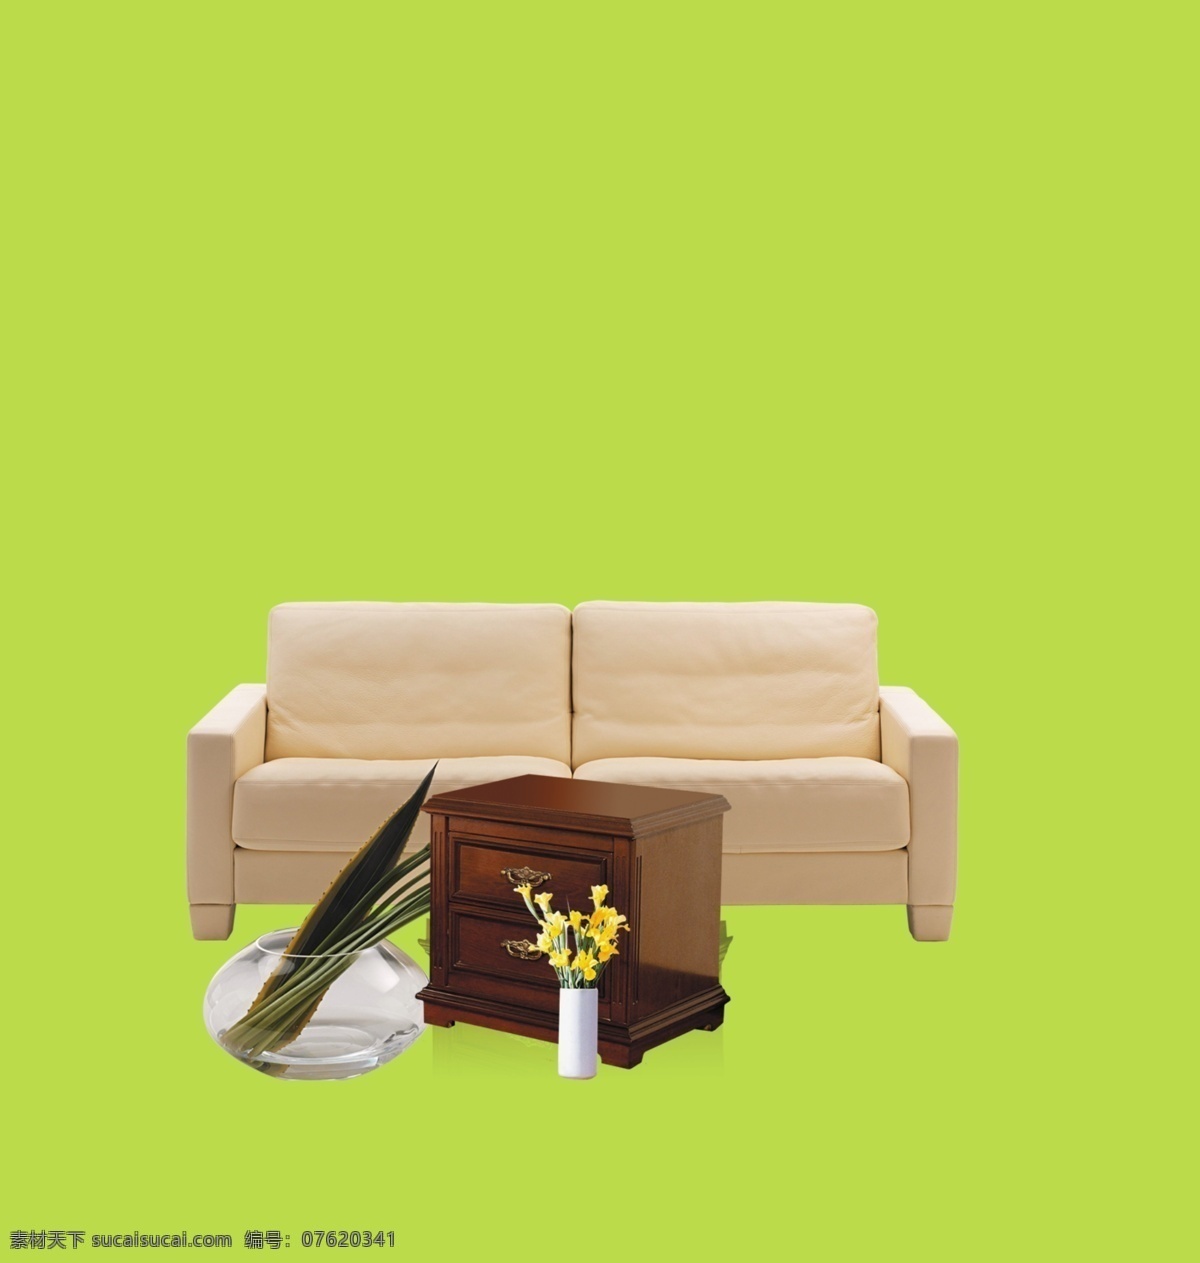 凳子 椅子 沙发 室内设计 矢量图 家具 绿色